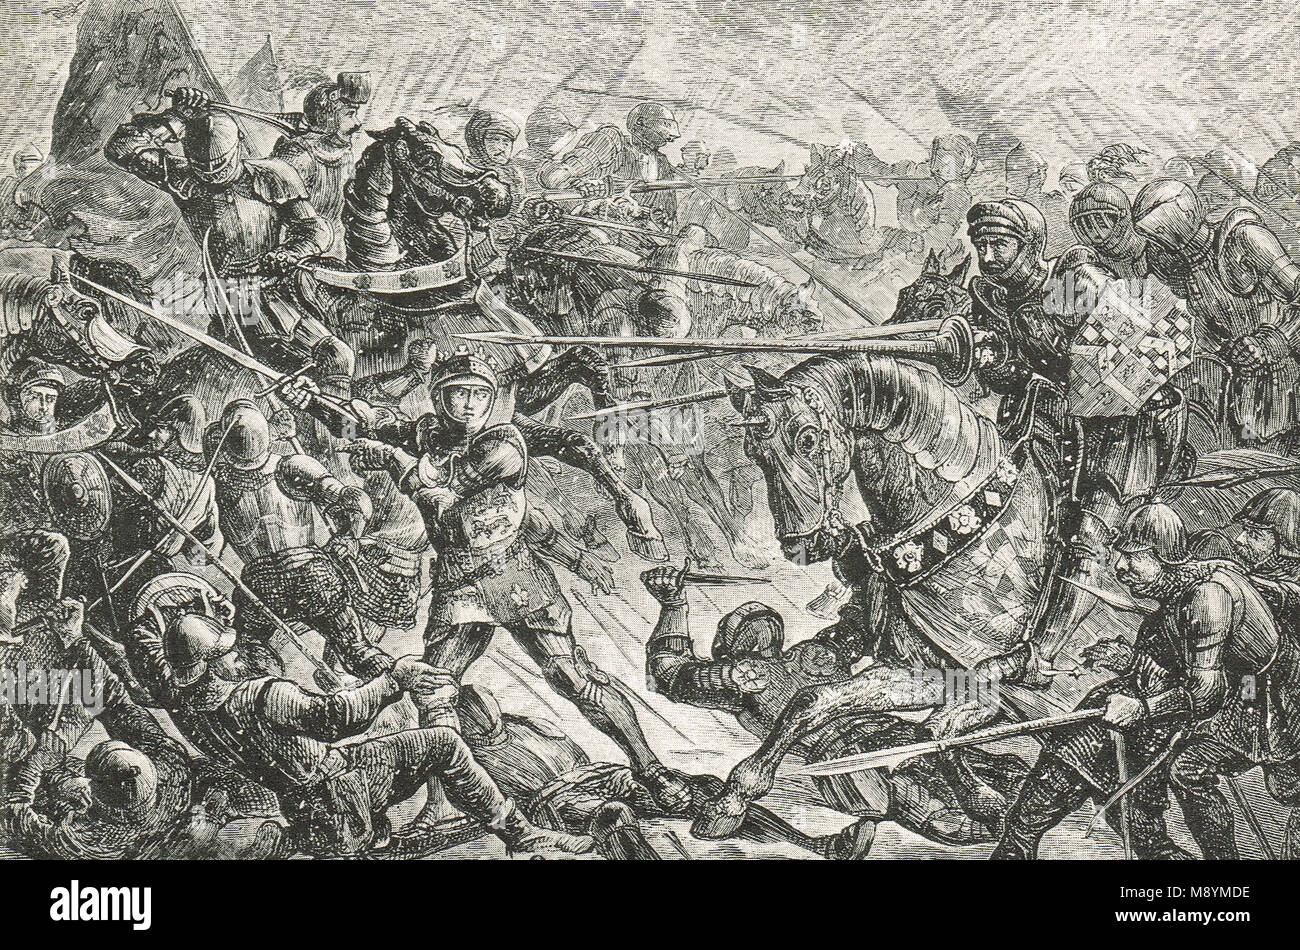 La deuxième bataille de St Albans, le 17 février 1461, bataille de la guerre des Deux-Roses Anglaise Banque D'Images